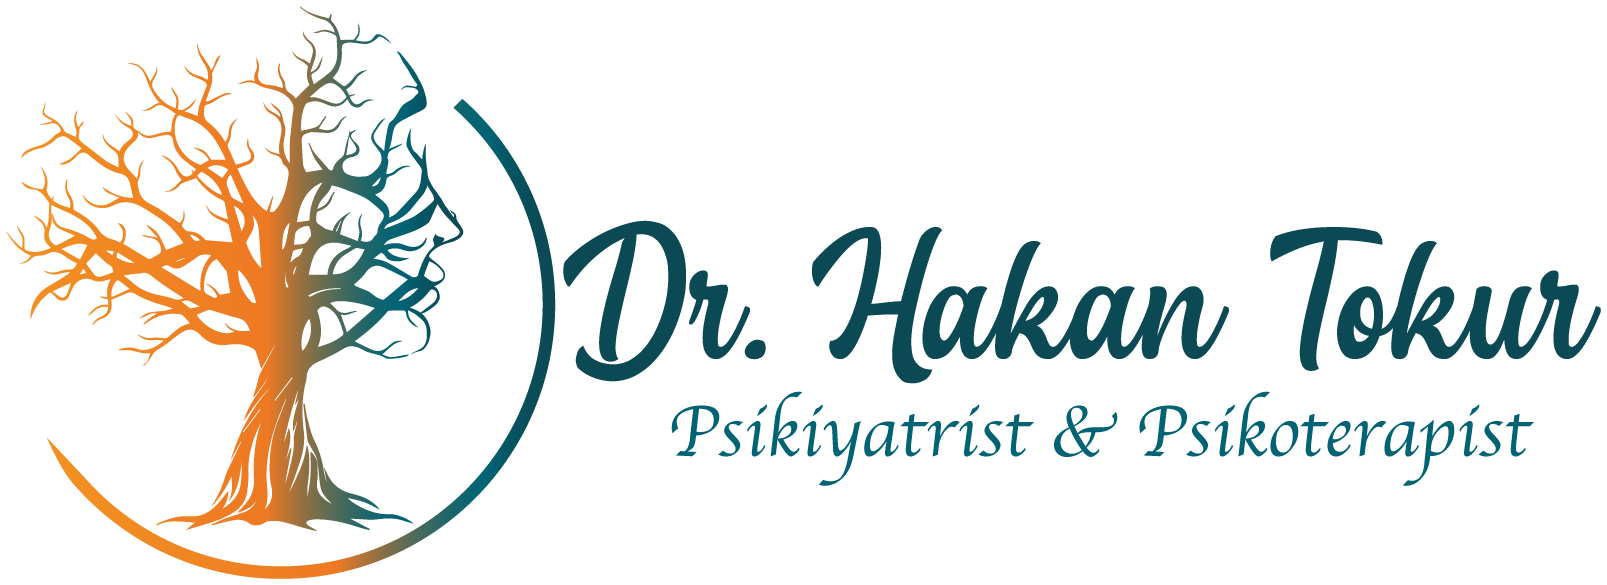 Dr. Hakan Tokur